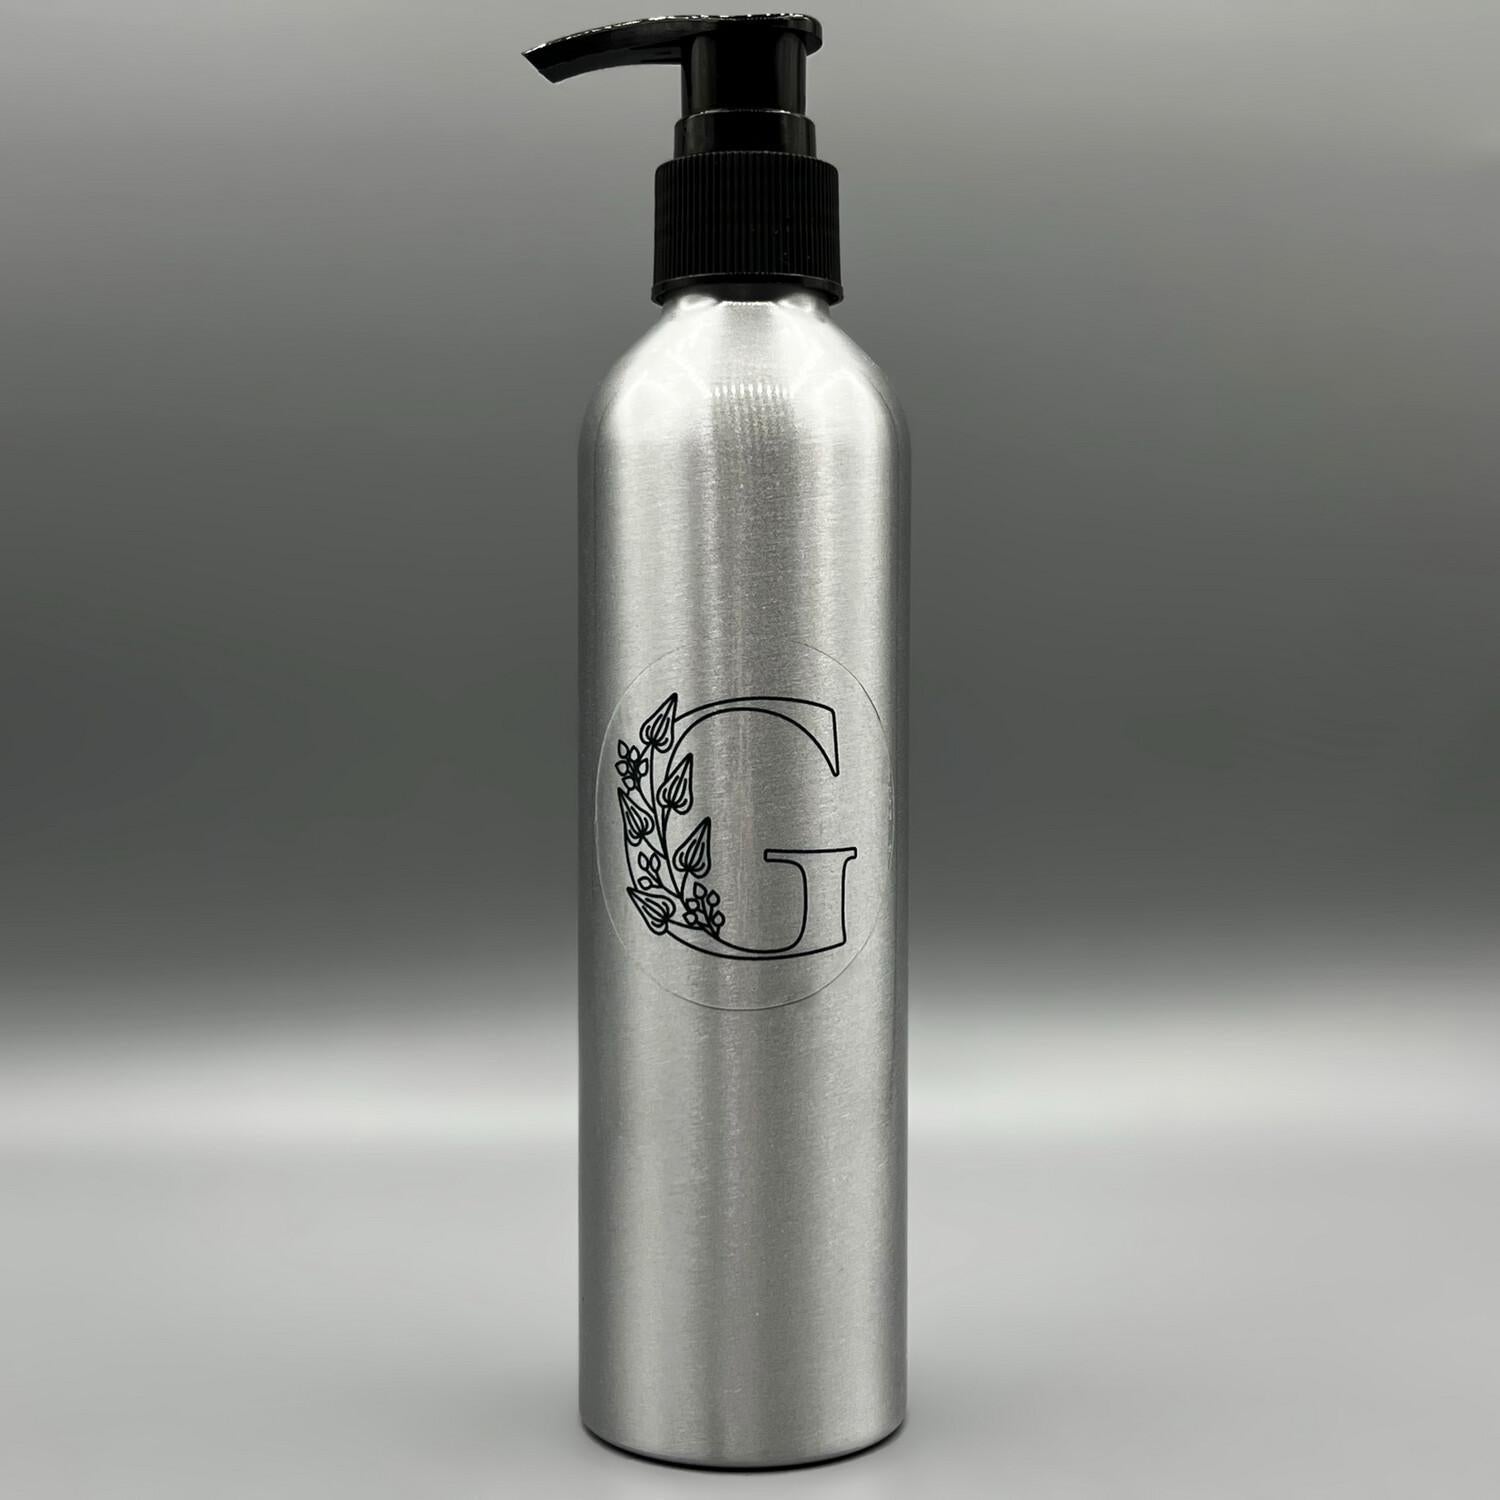 Casa Agave (TM) Vegan Plastic Free Bottle Brush – Fillgood